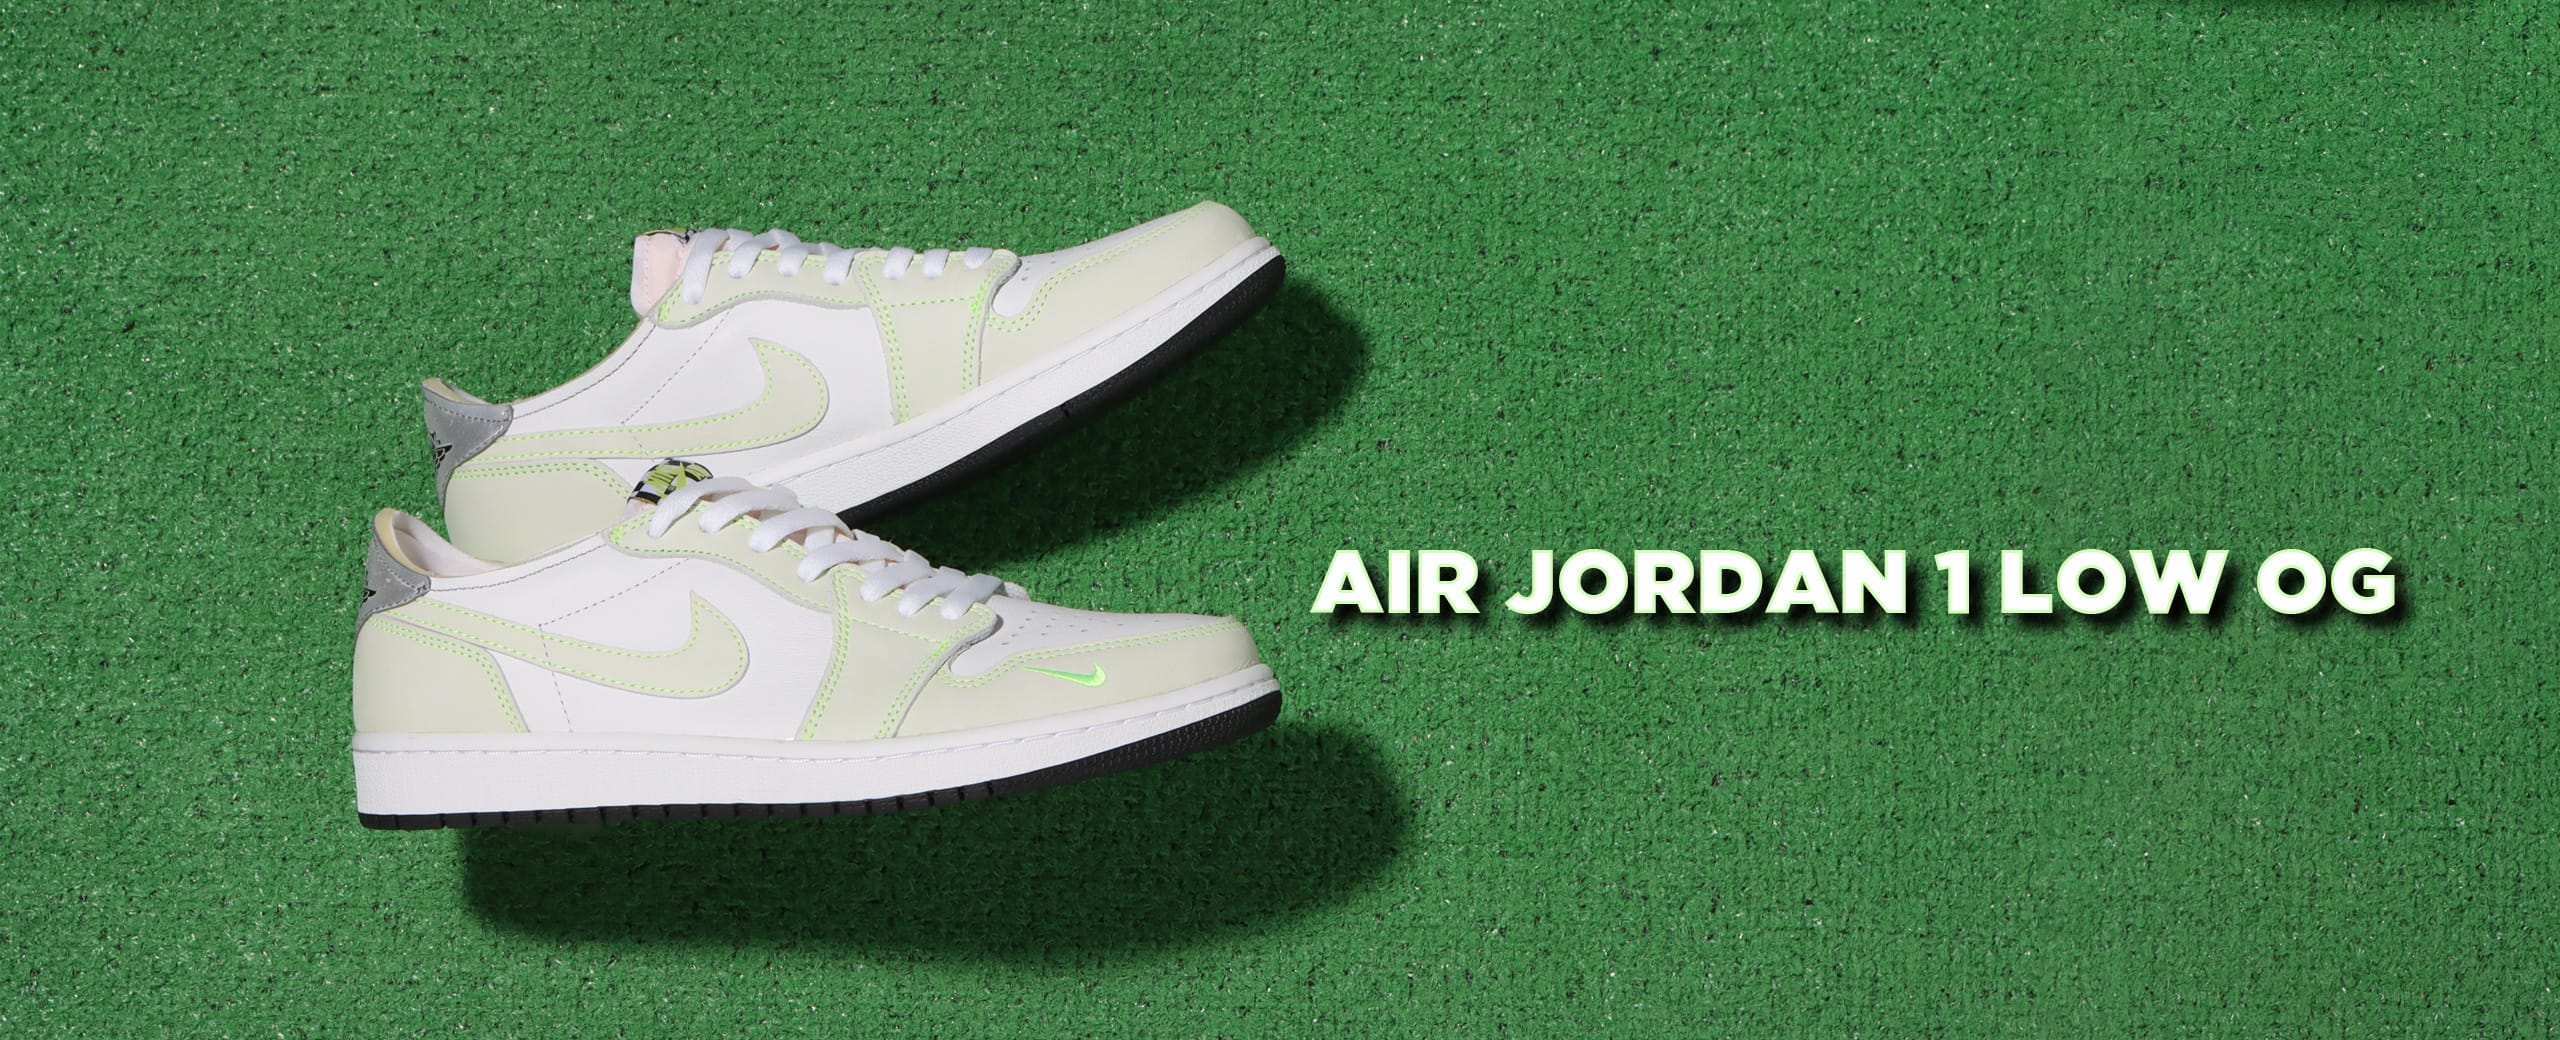 Nike Air Jordan 1 Low OG "Ghost Green"